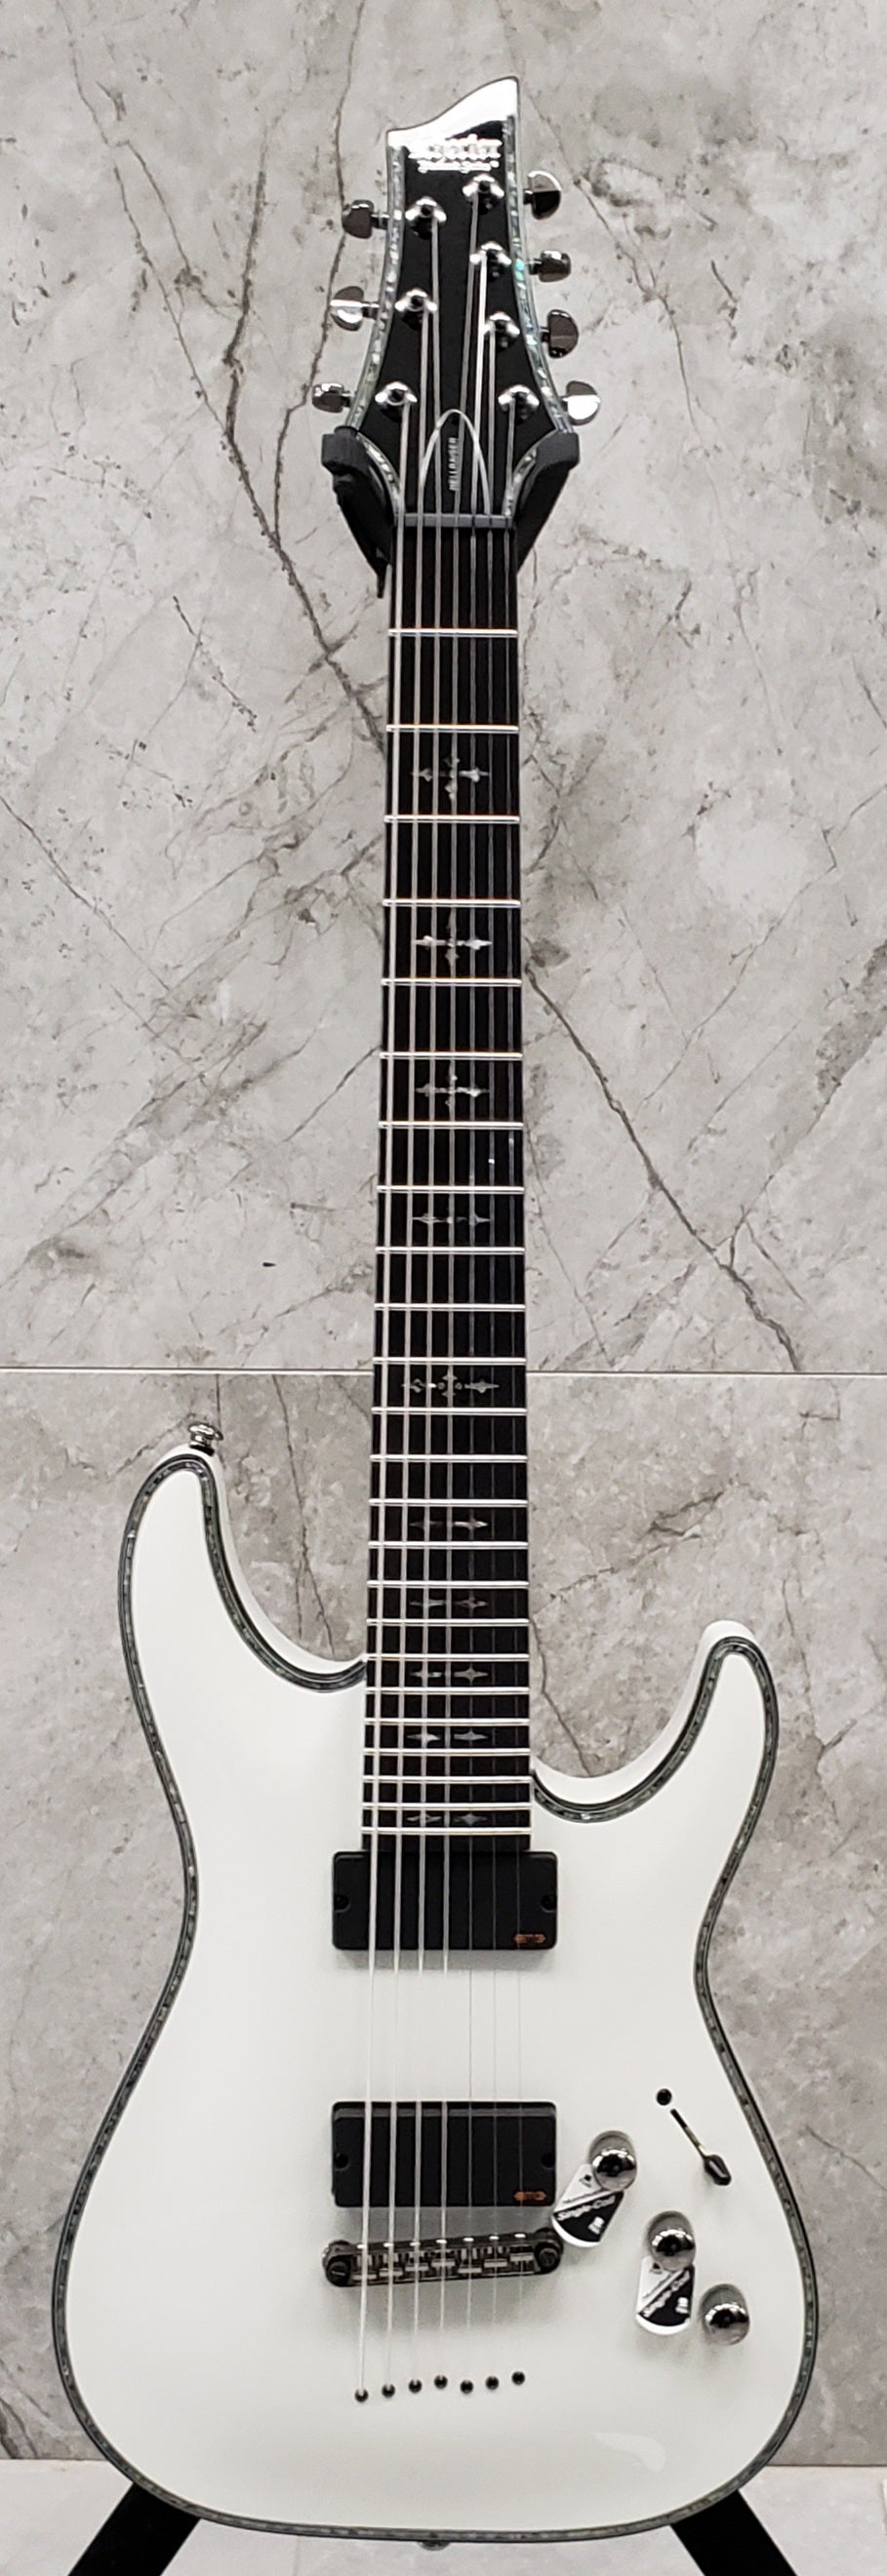 Schecter HR-C-7-WHT Hellraiser Gloss White 7 String Guitar with EMG 707TW Pickups 1810-SHC